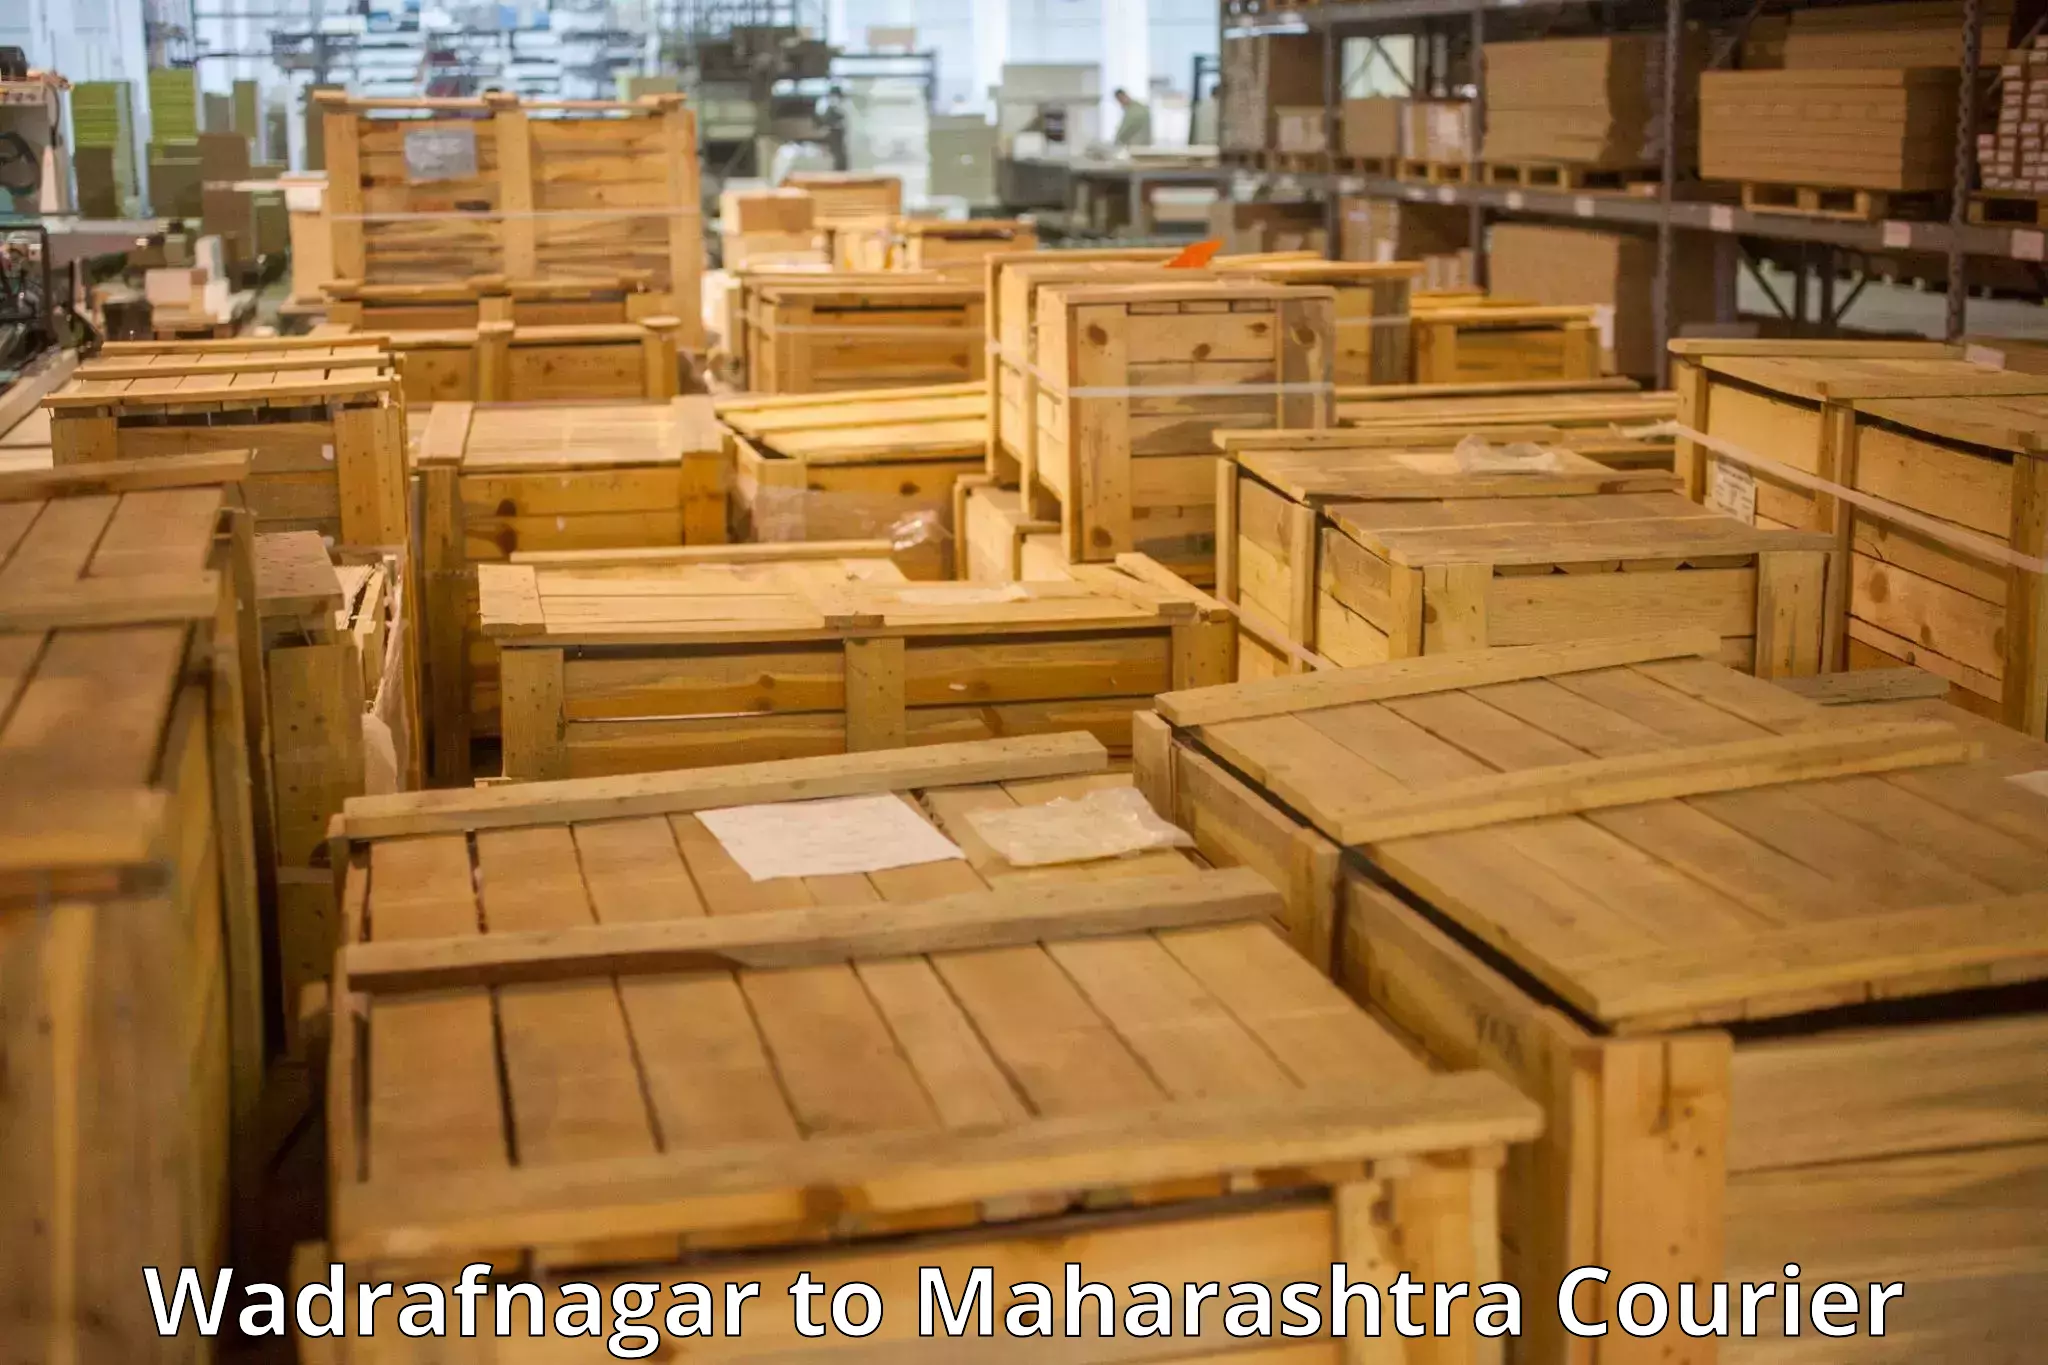 Luggage shipping efficiency Wadrafnagar to Brahmapuri